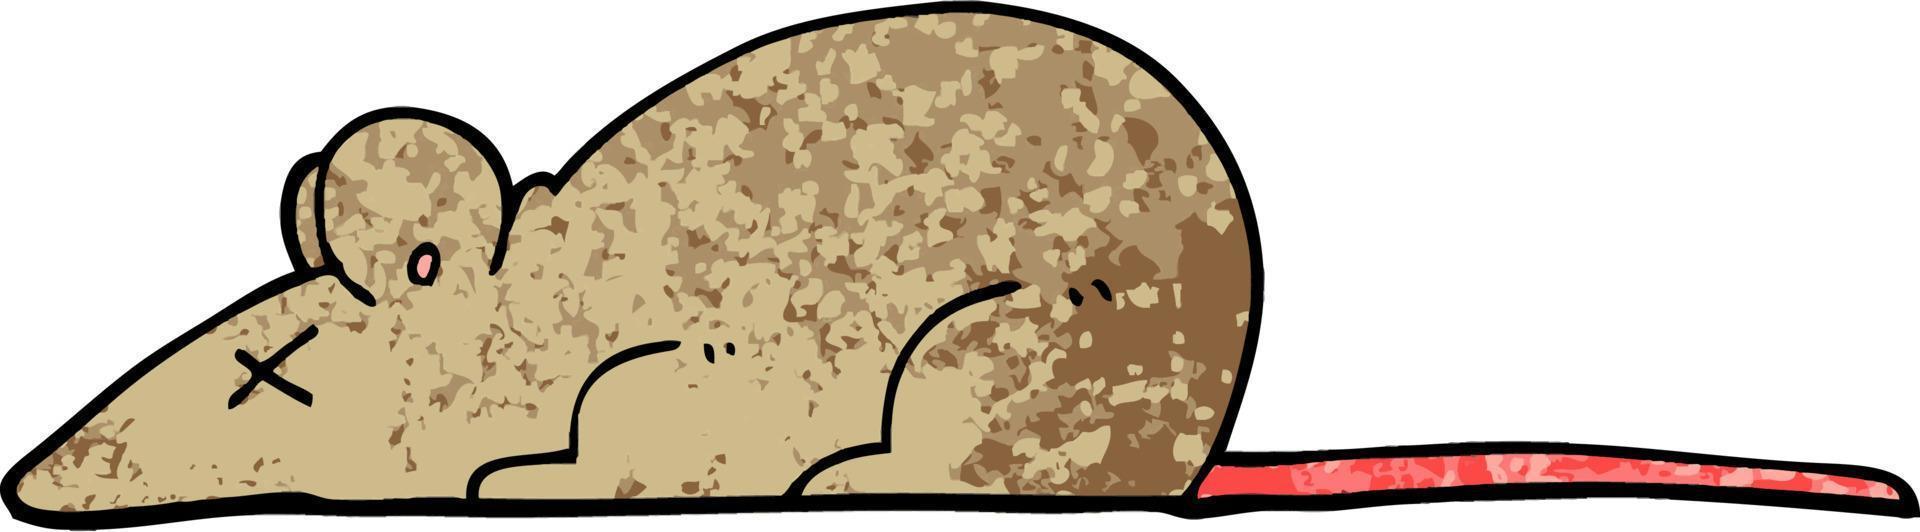 rata muerta de dibujos animados de ilustración con textura grunge vector